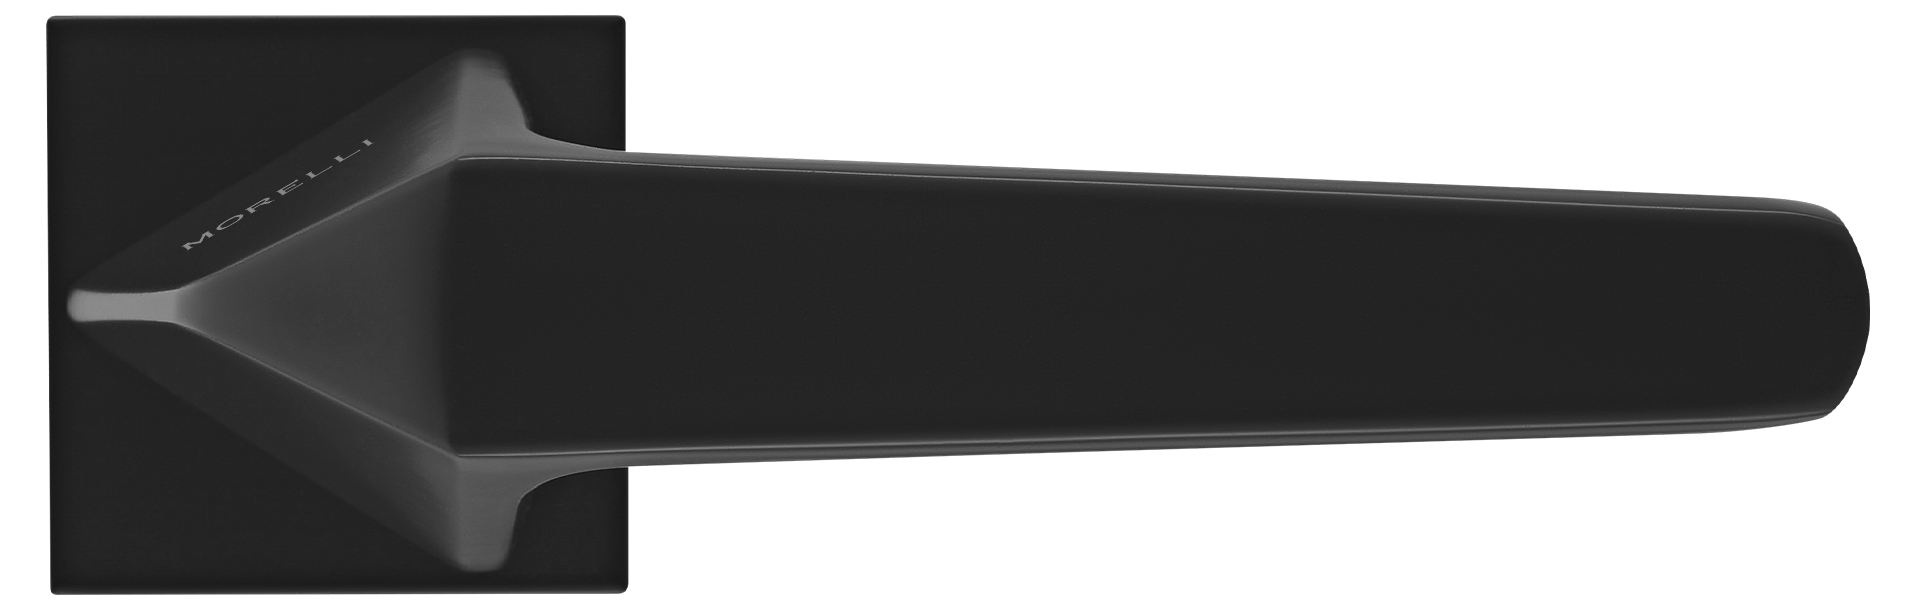 SOUK ручка дверная на квадратной розетке 6 мм, MH-55-S6 BL, цвет - черный фото #2